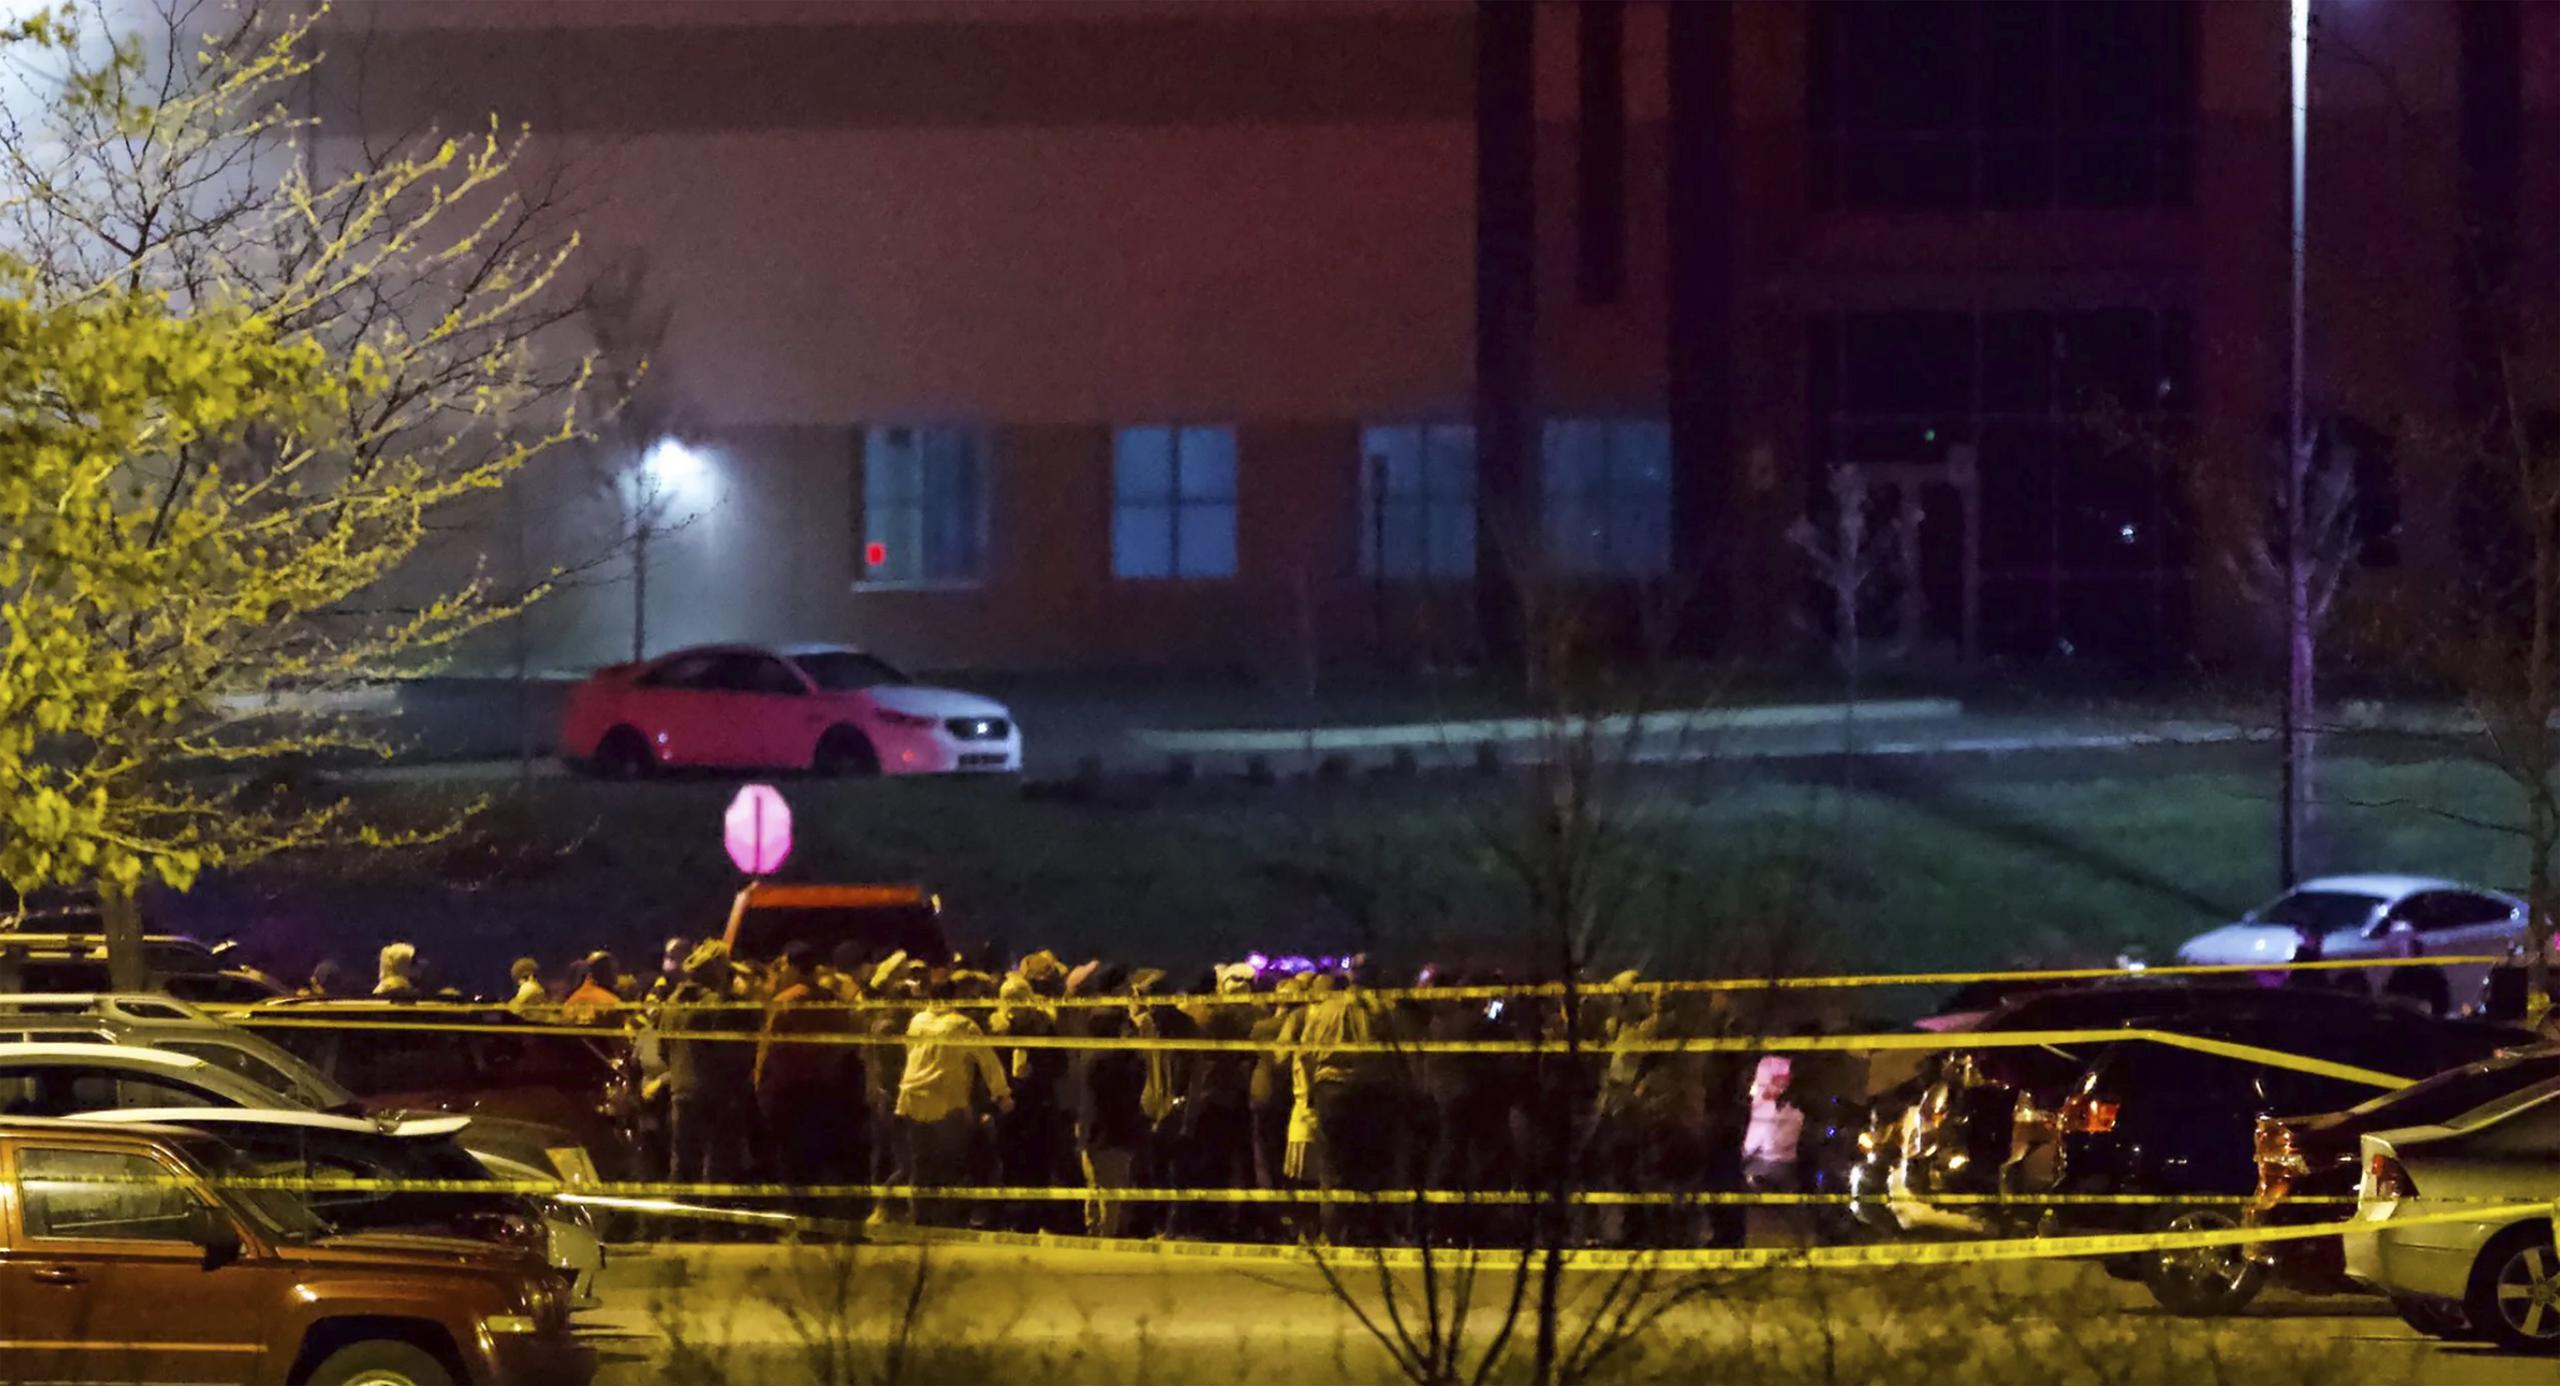 Una emisión en vivo de medios locales mostró que el estacionamiento en el exterior del edificio estaba acordonado con cinta policial.